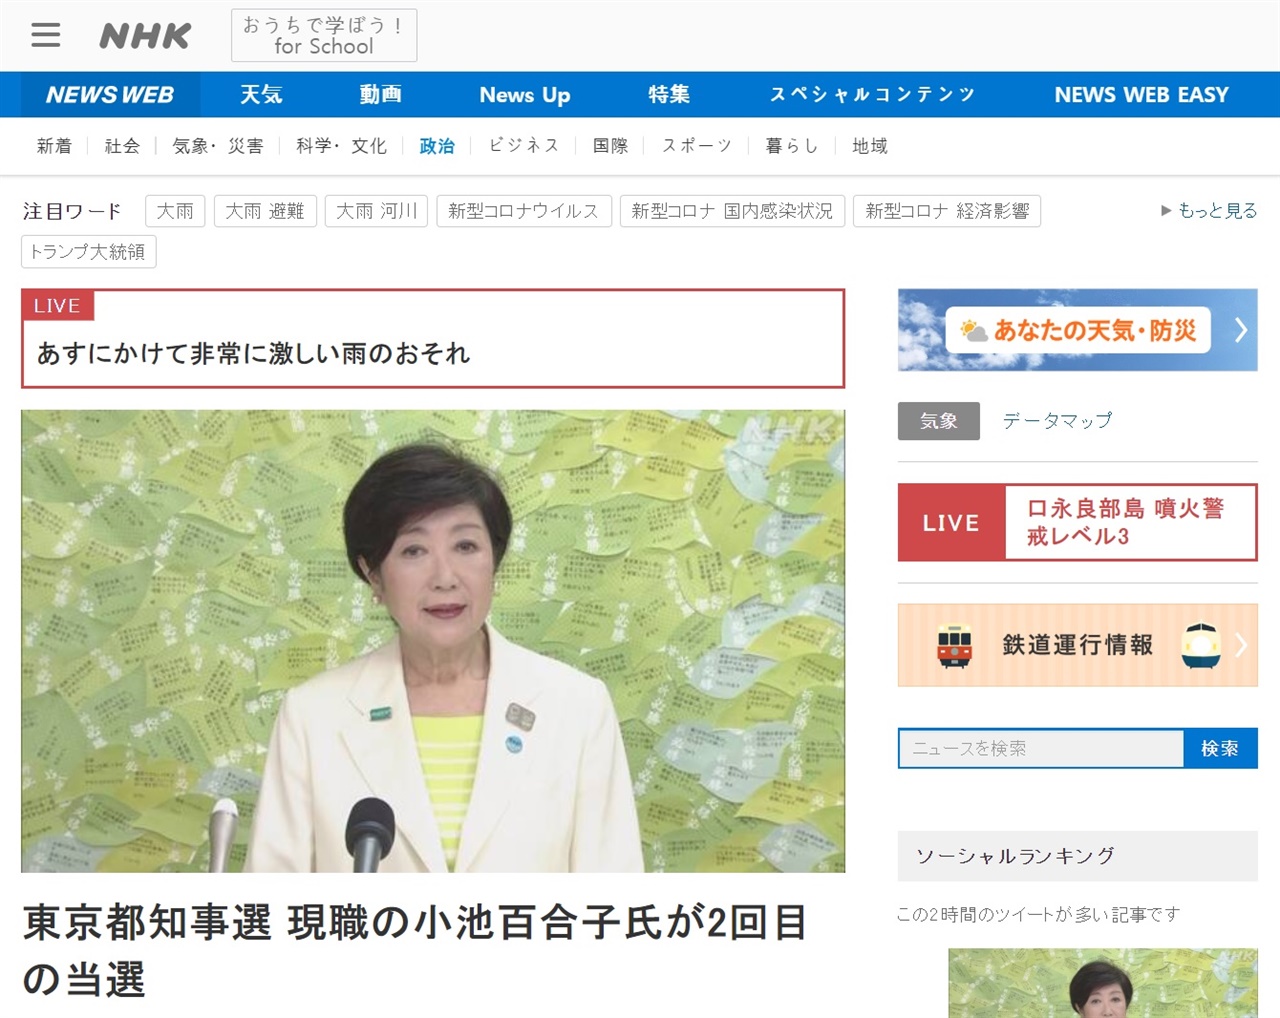 고이케 유리코 일본 도쿄도지사의 재선 성공을 보도하는 NHK 뉴스 갈무리.